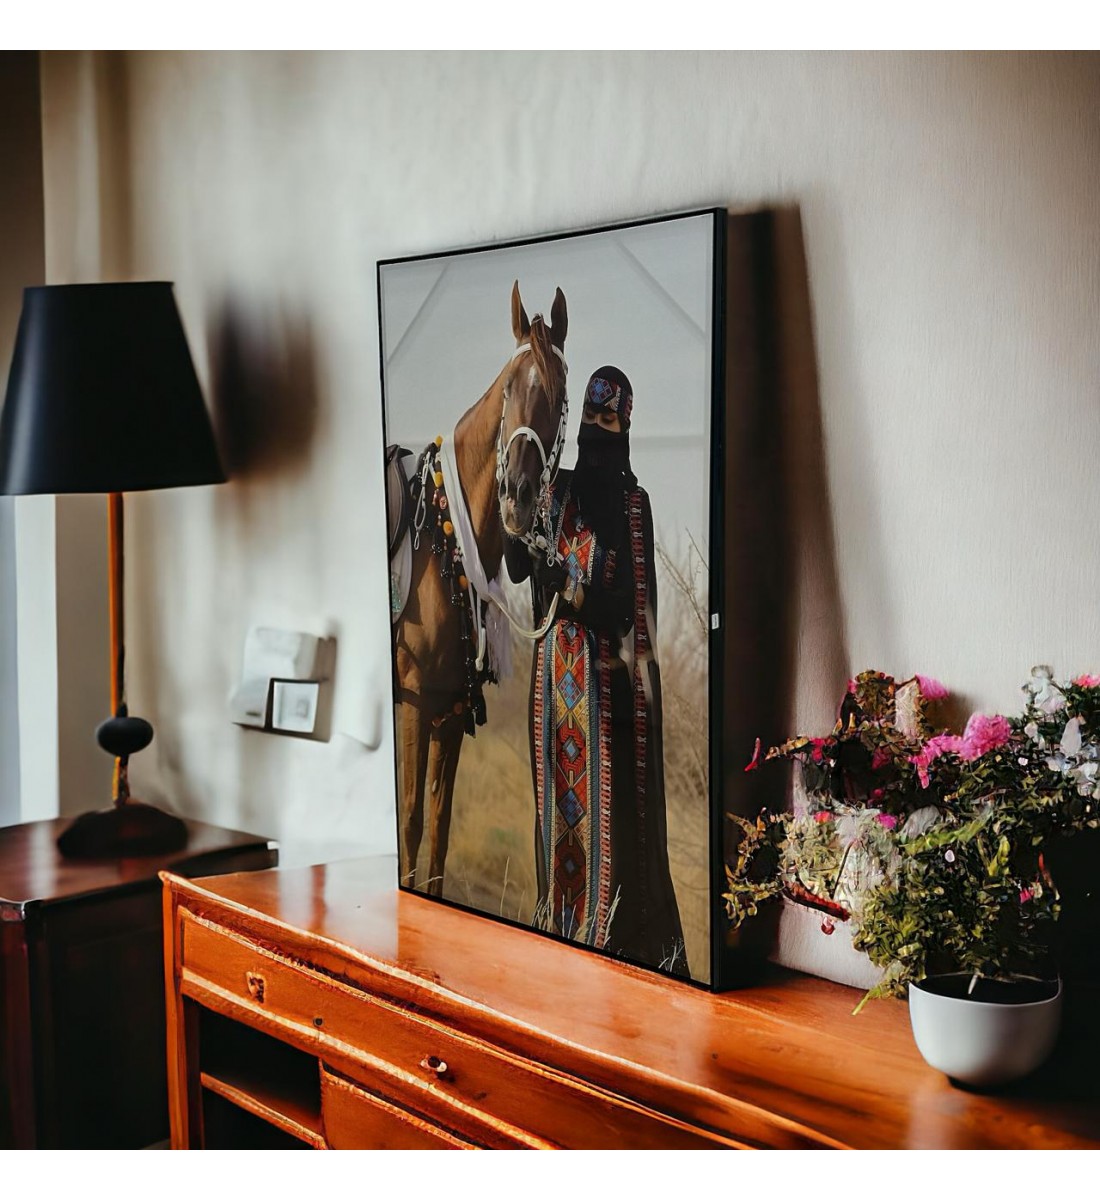 لوحة فنية جدارية كانفس ، حصان والبنت بلجام  والبنت - باطار اسود 200×120سم 